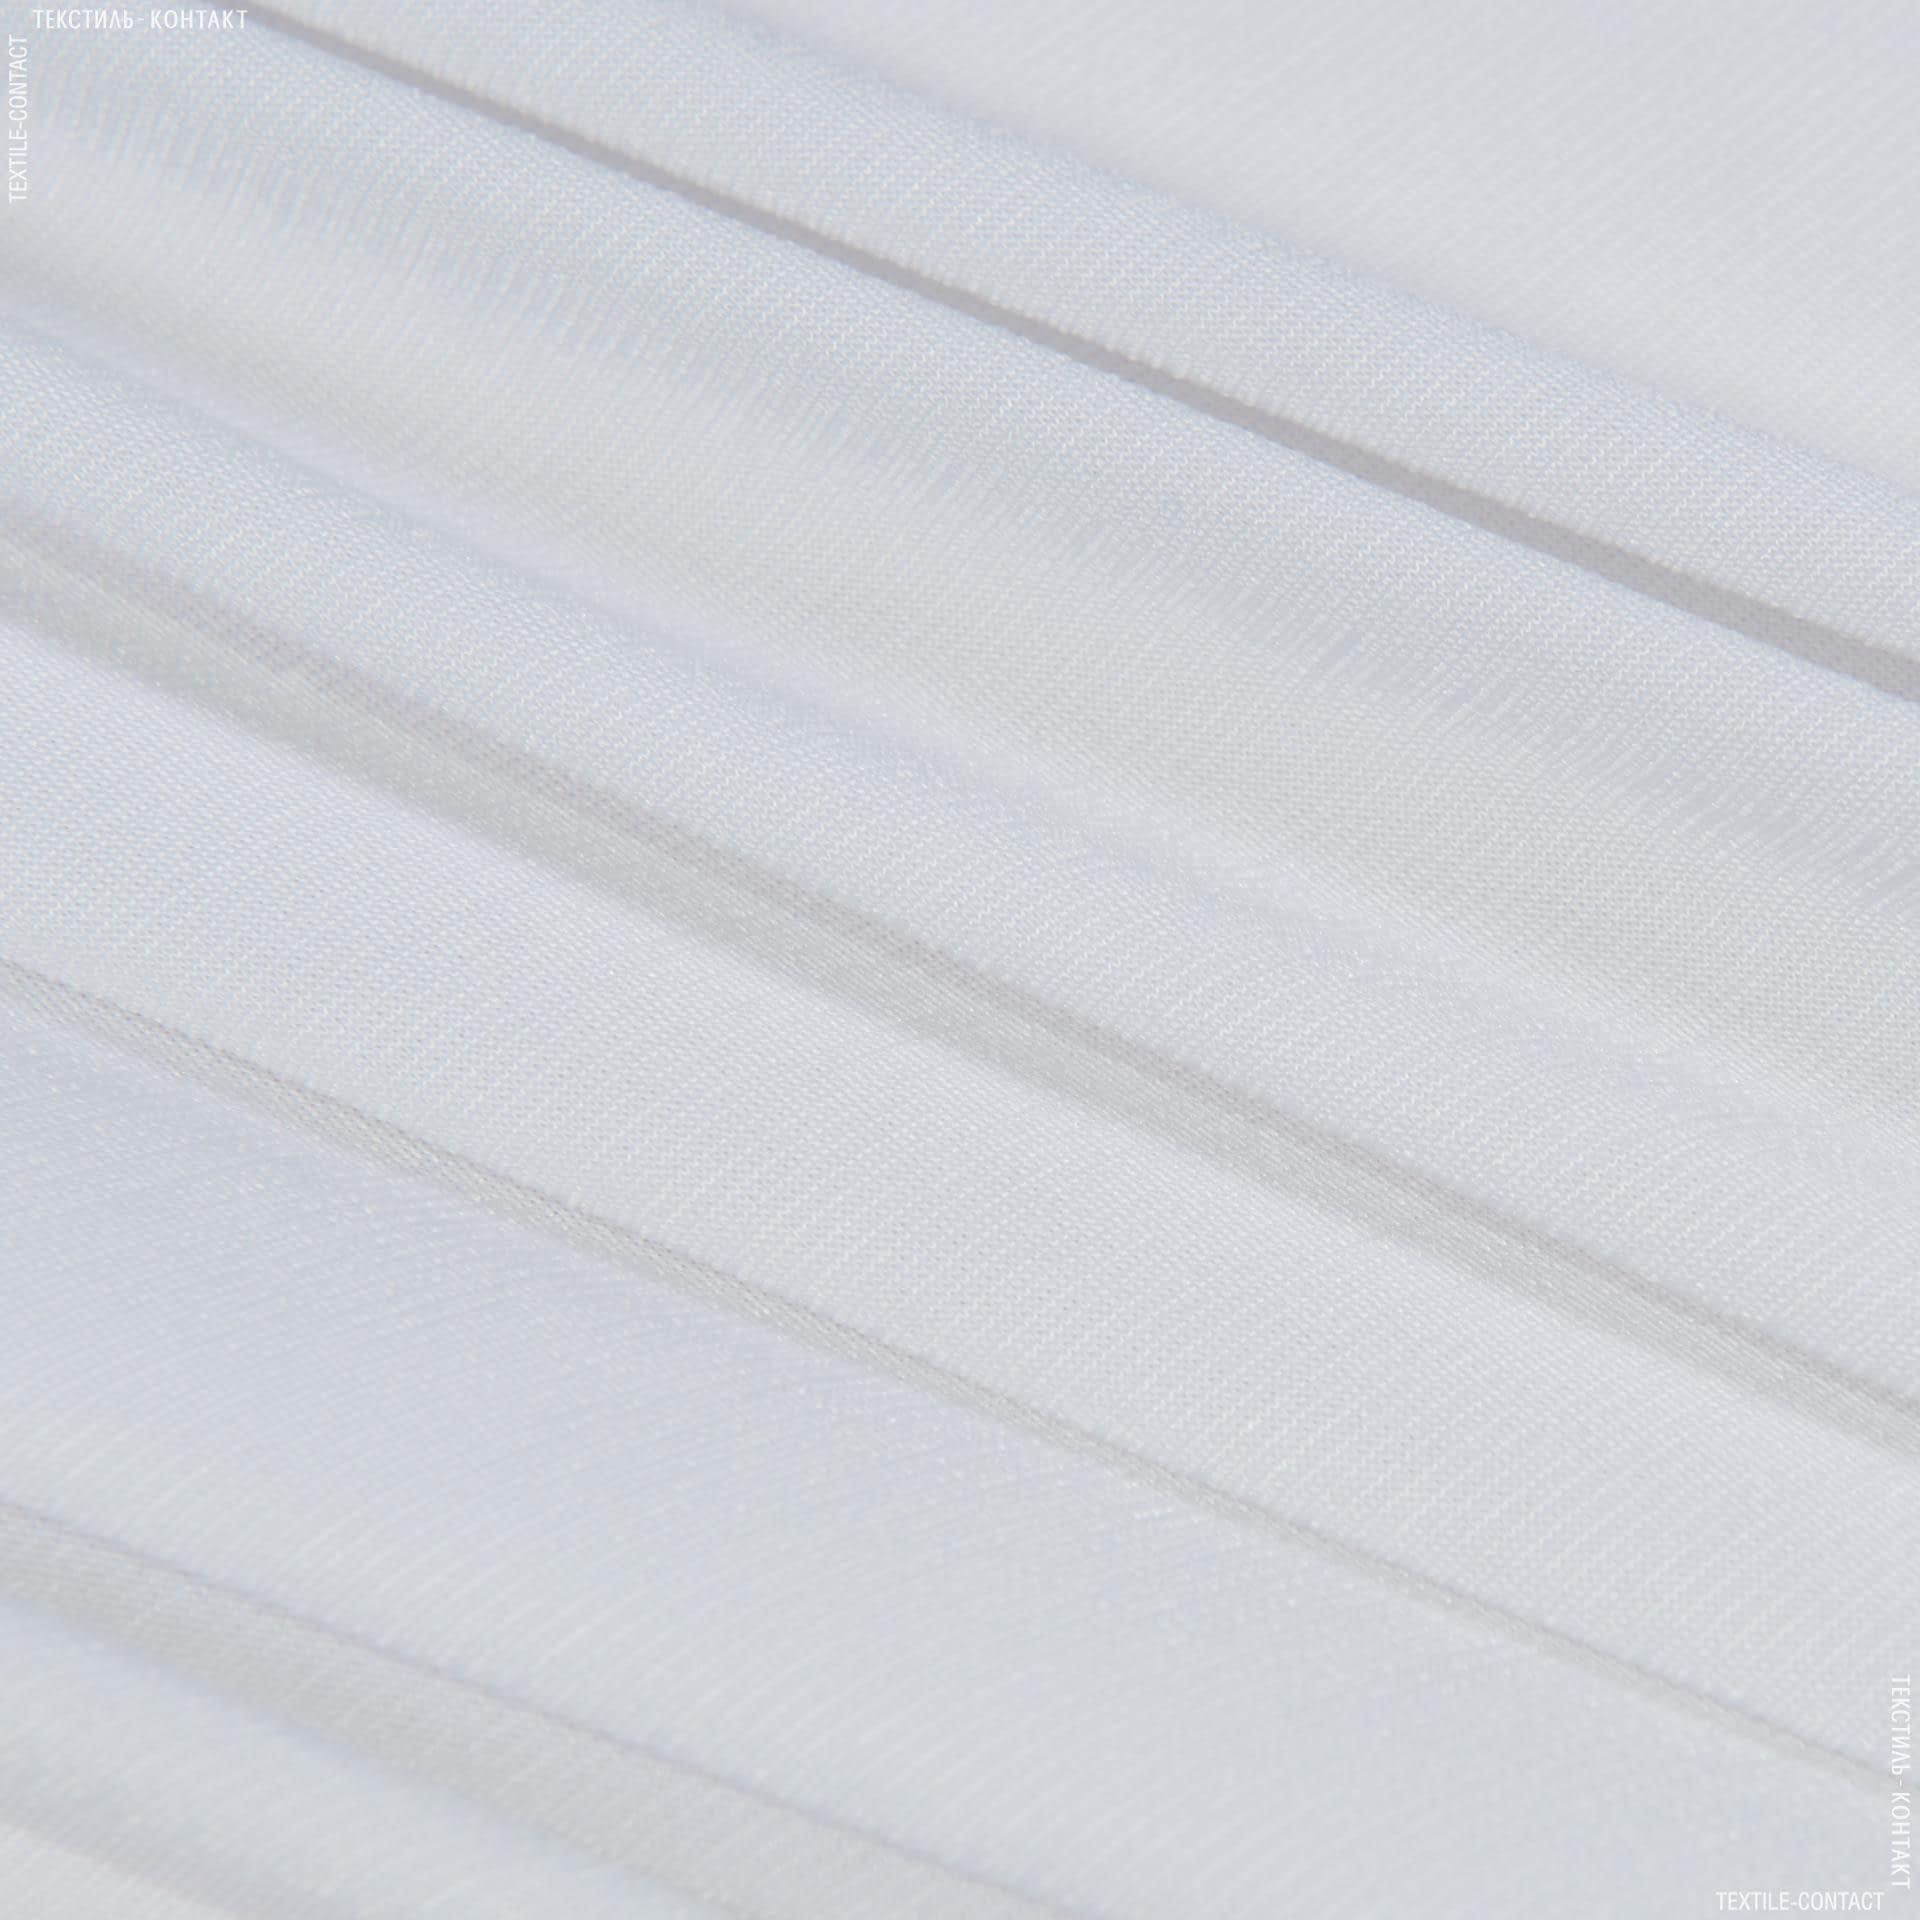 Ткани для платьев - Трикотаж масло белый